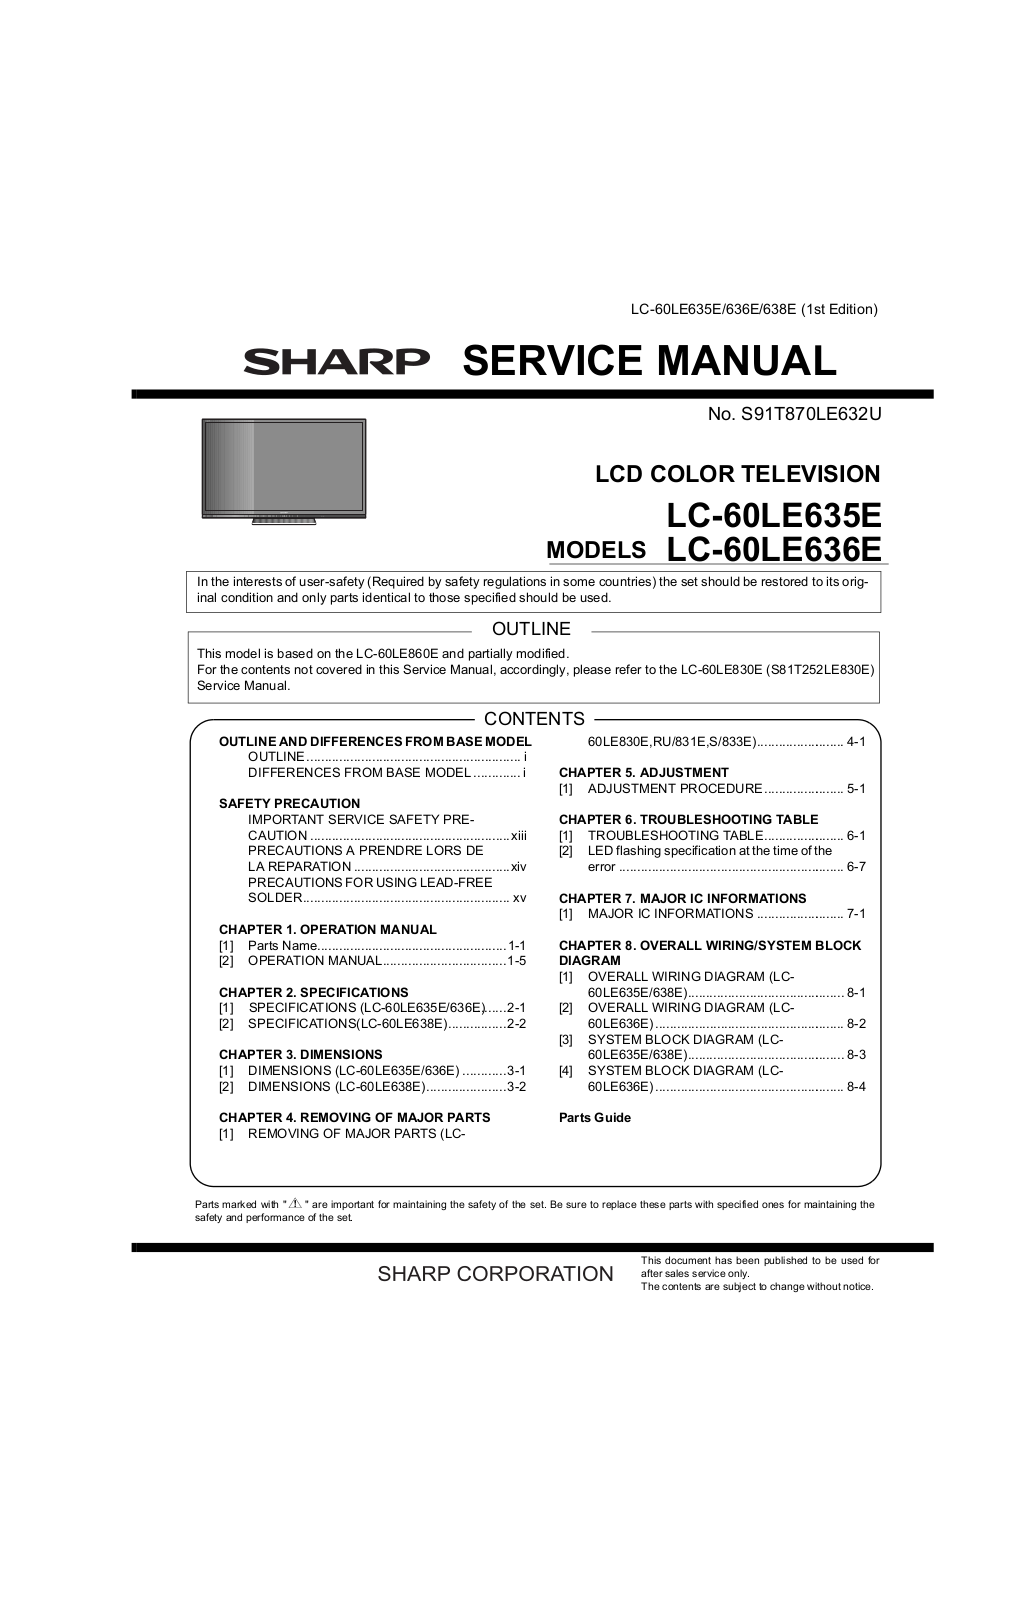 SHARP LC-60LE635E, LC-60LE636E Service Manual